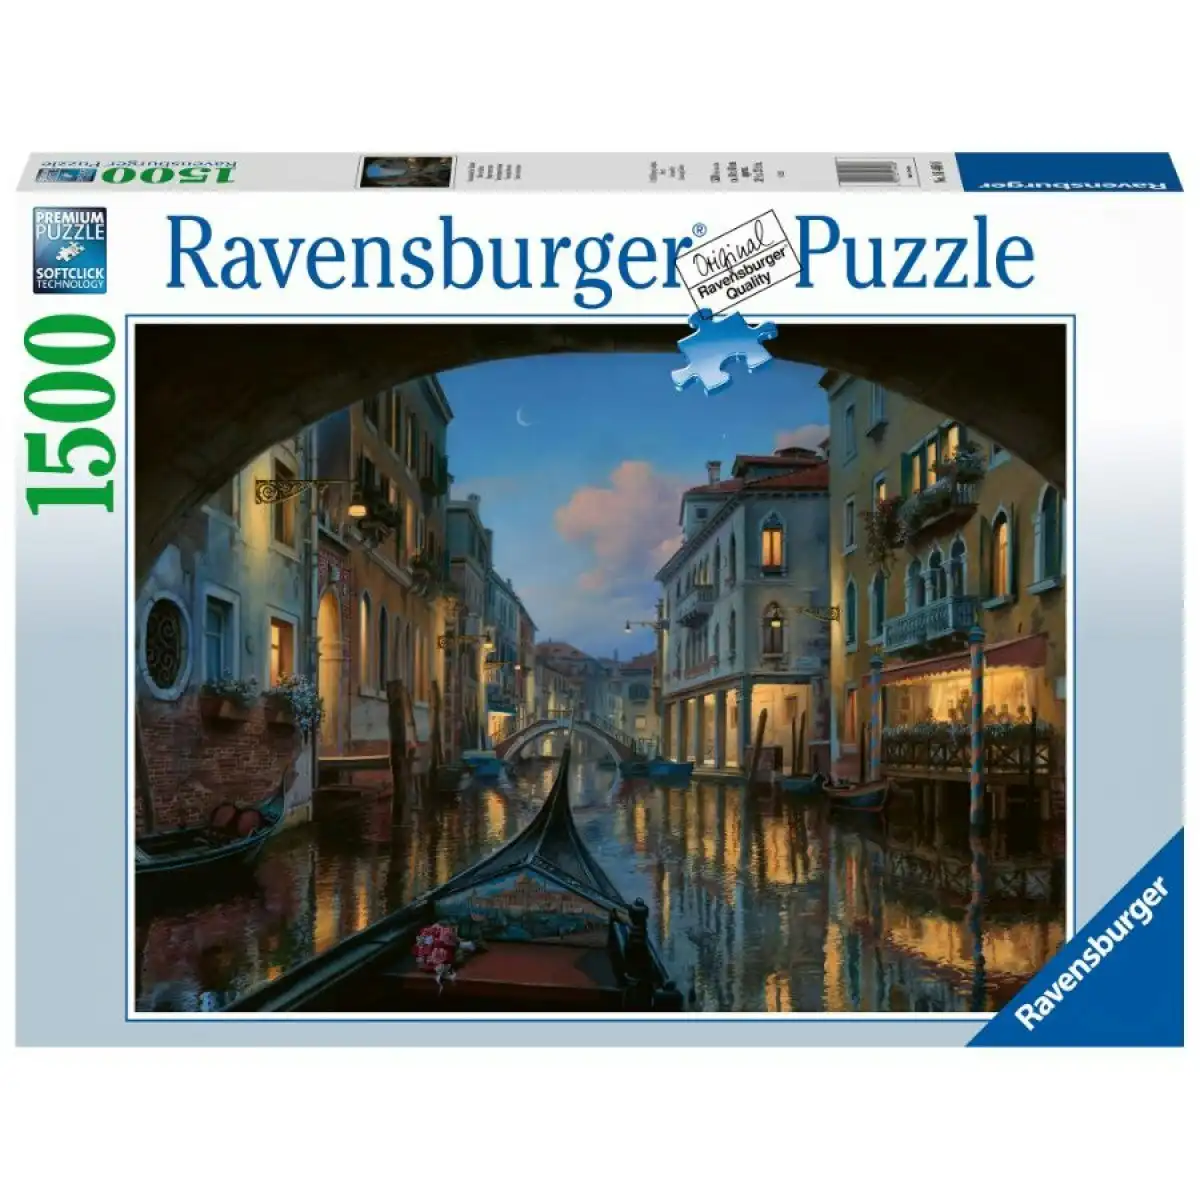 Ravensburger - Venetian Dreams Jigsaw Puzzle 1500 Pieces